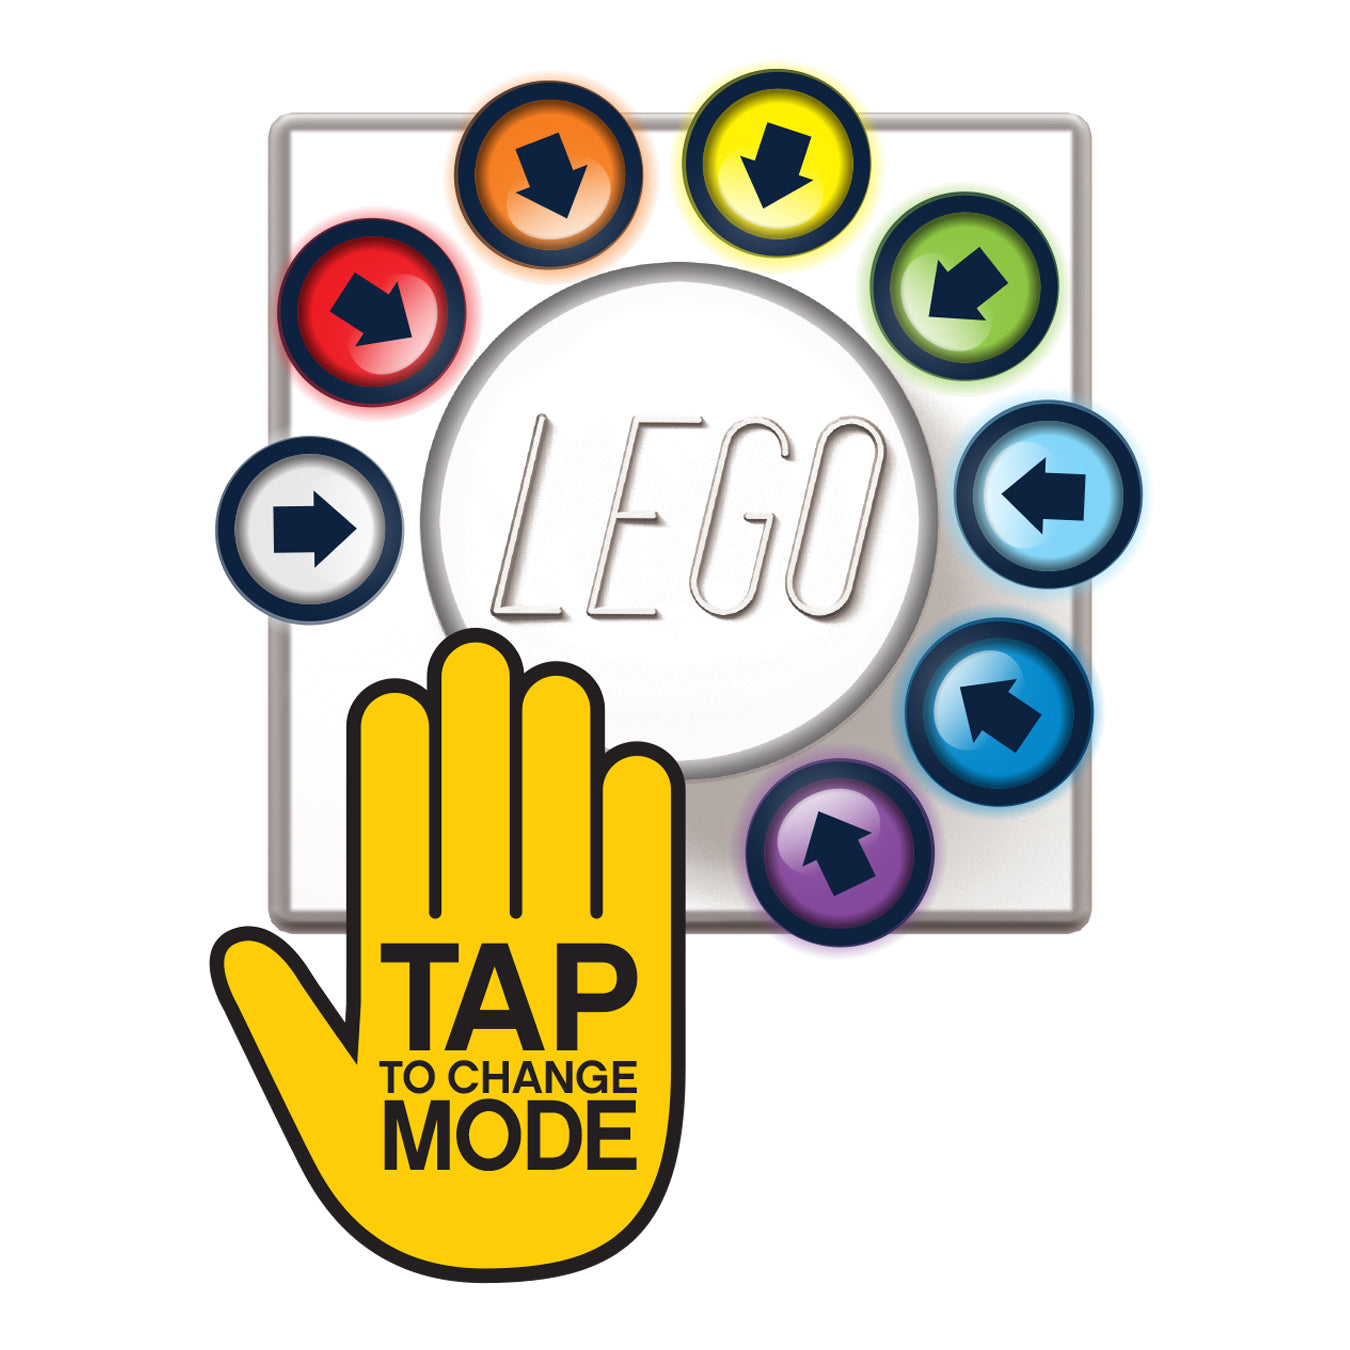 IQ レゴ アイコニック 1×1のレゴブロック形 柔らかシリコン タッチ式 ランプ 赤 (LP38)